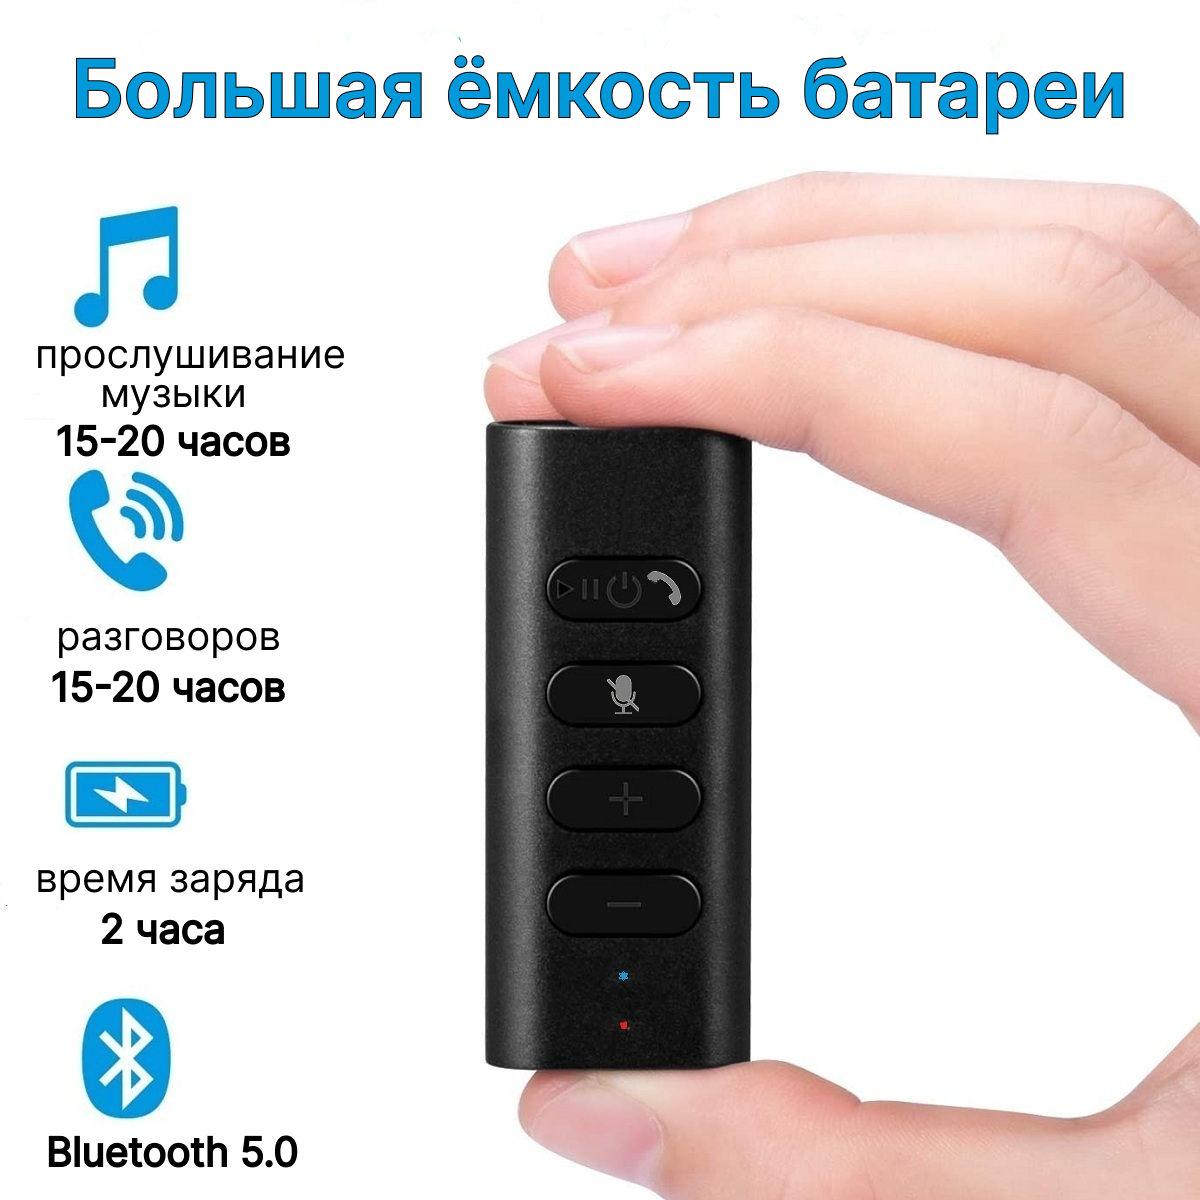 Bluetooth адаптер универсальный, беспроводной внешний блютуз, ресивер